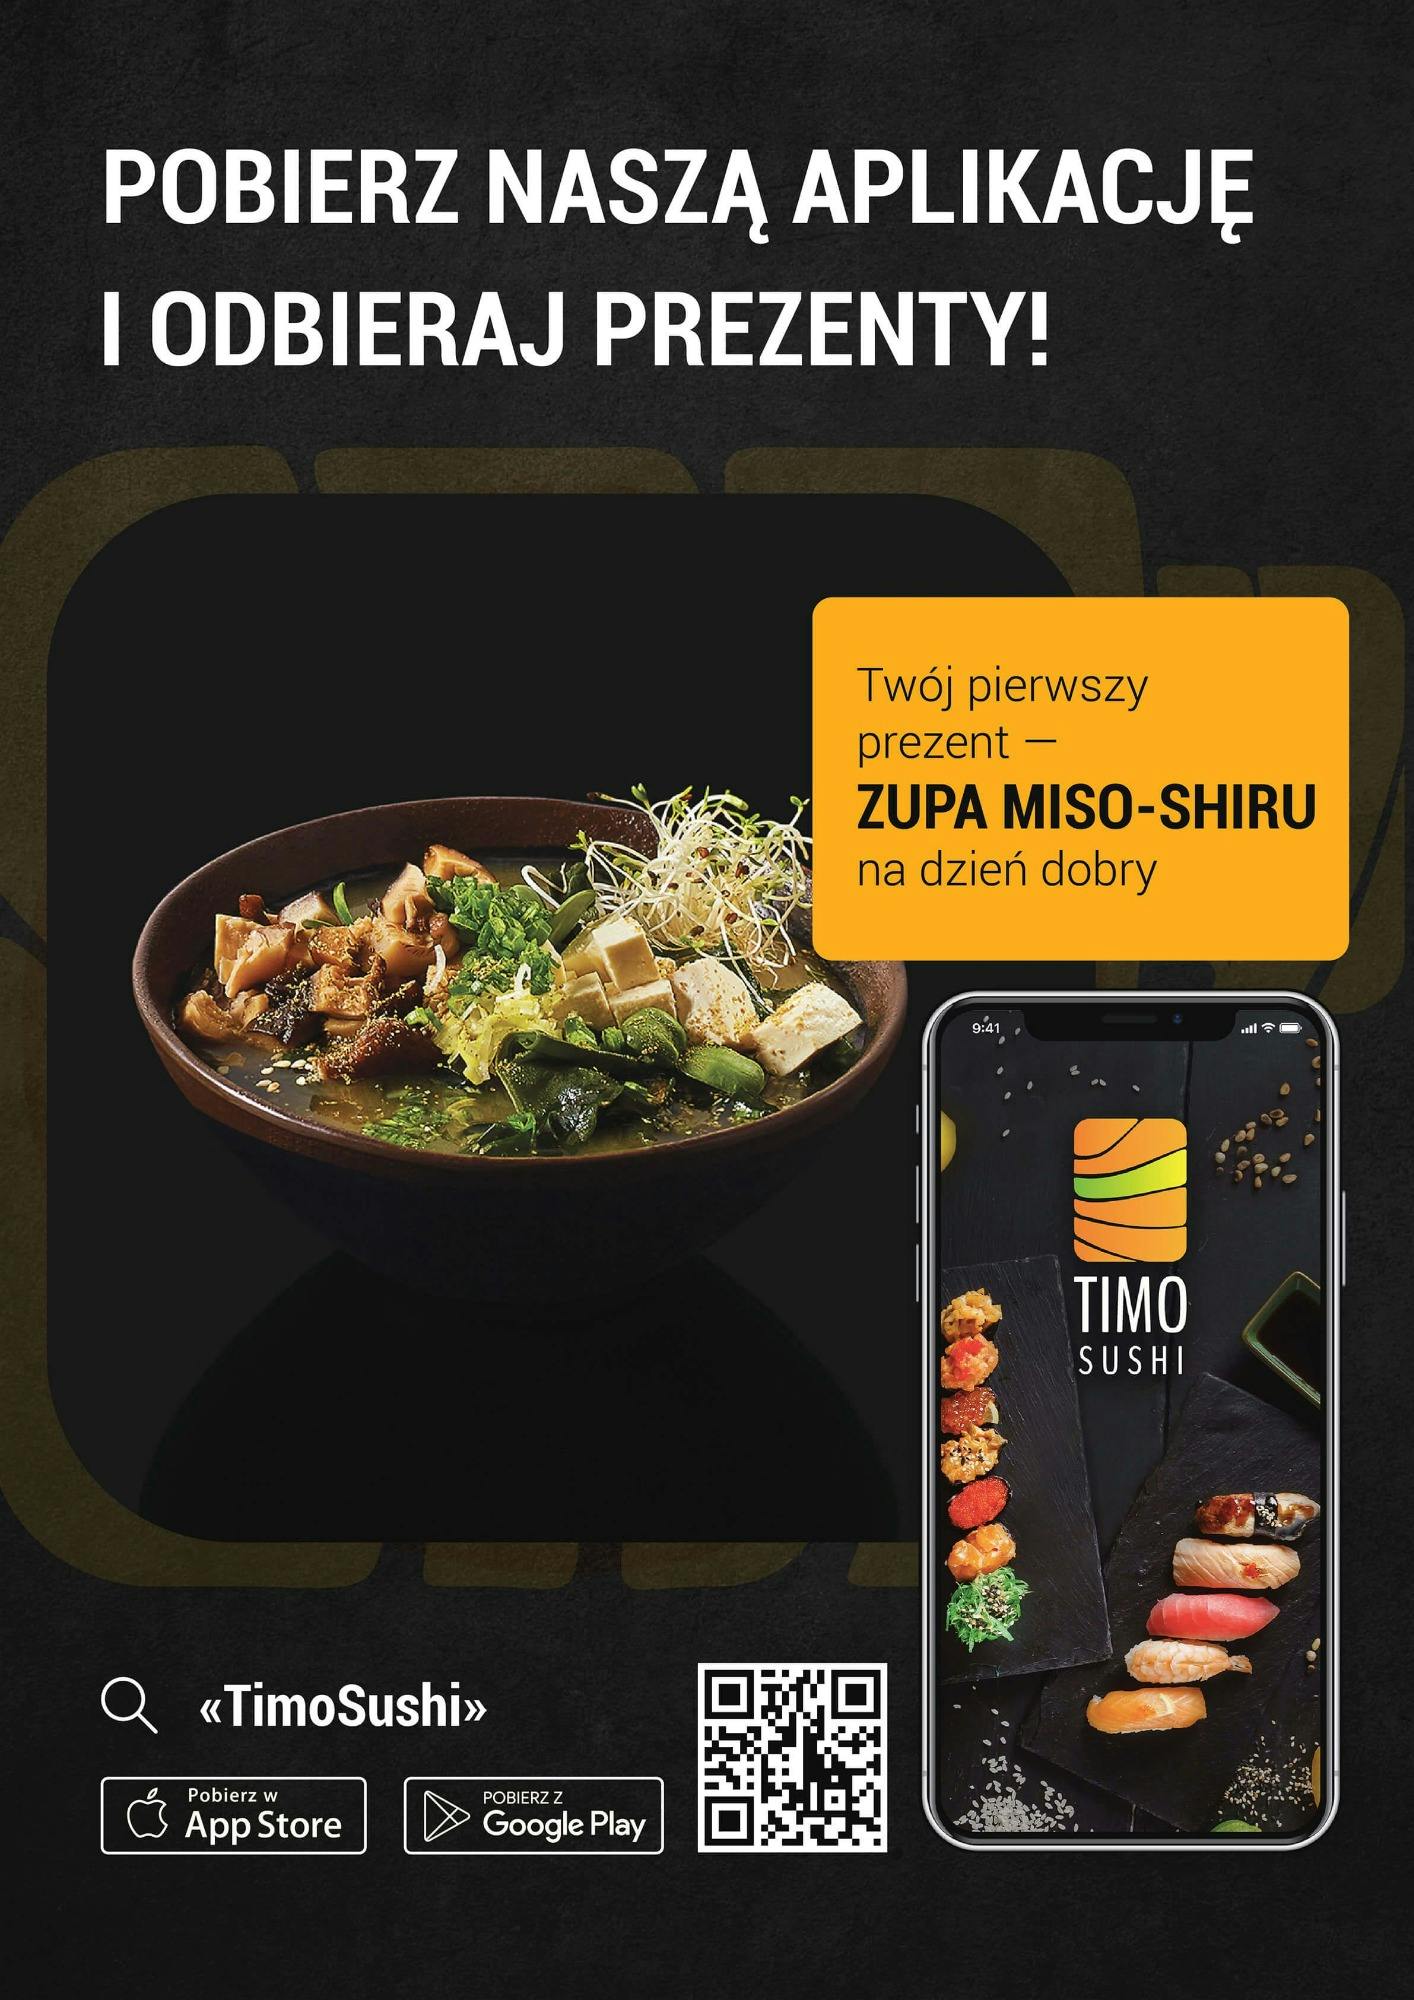 Pobierz naszą aplikację i zamów sushi w gdańsku